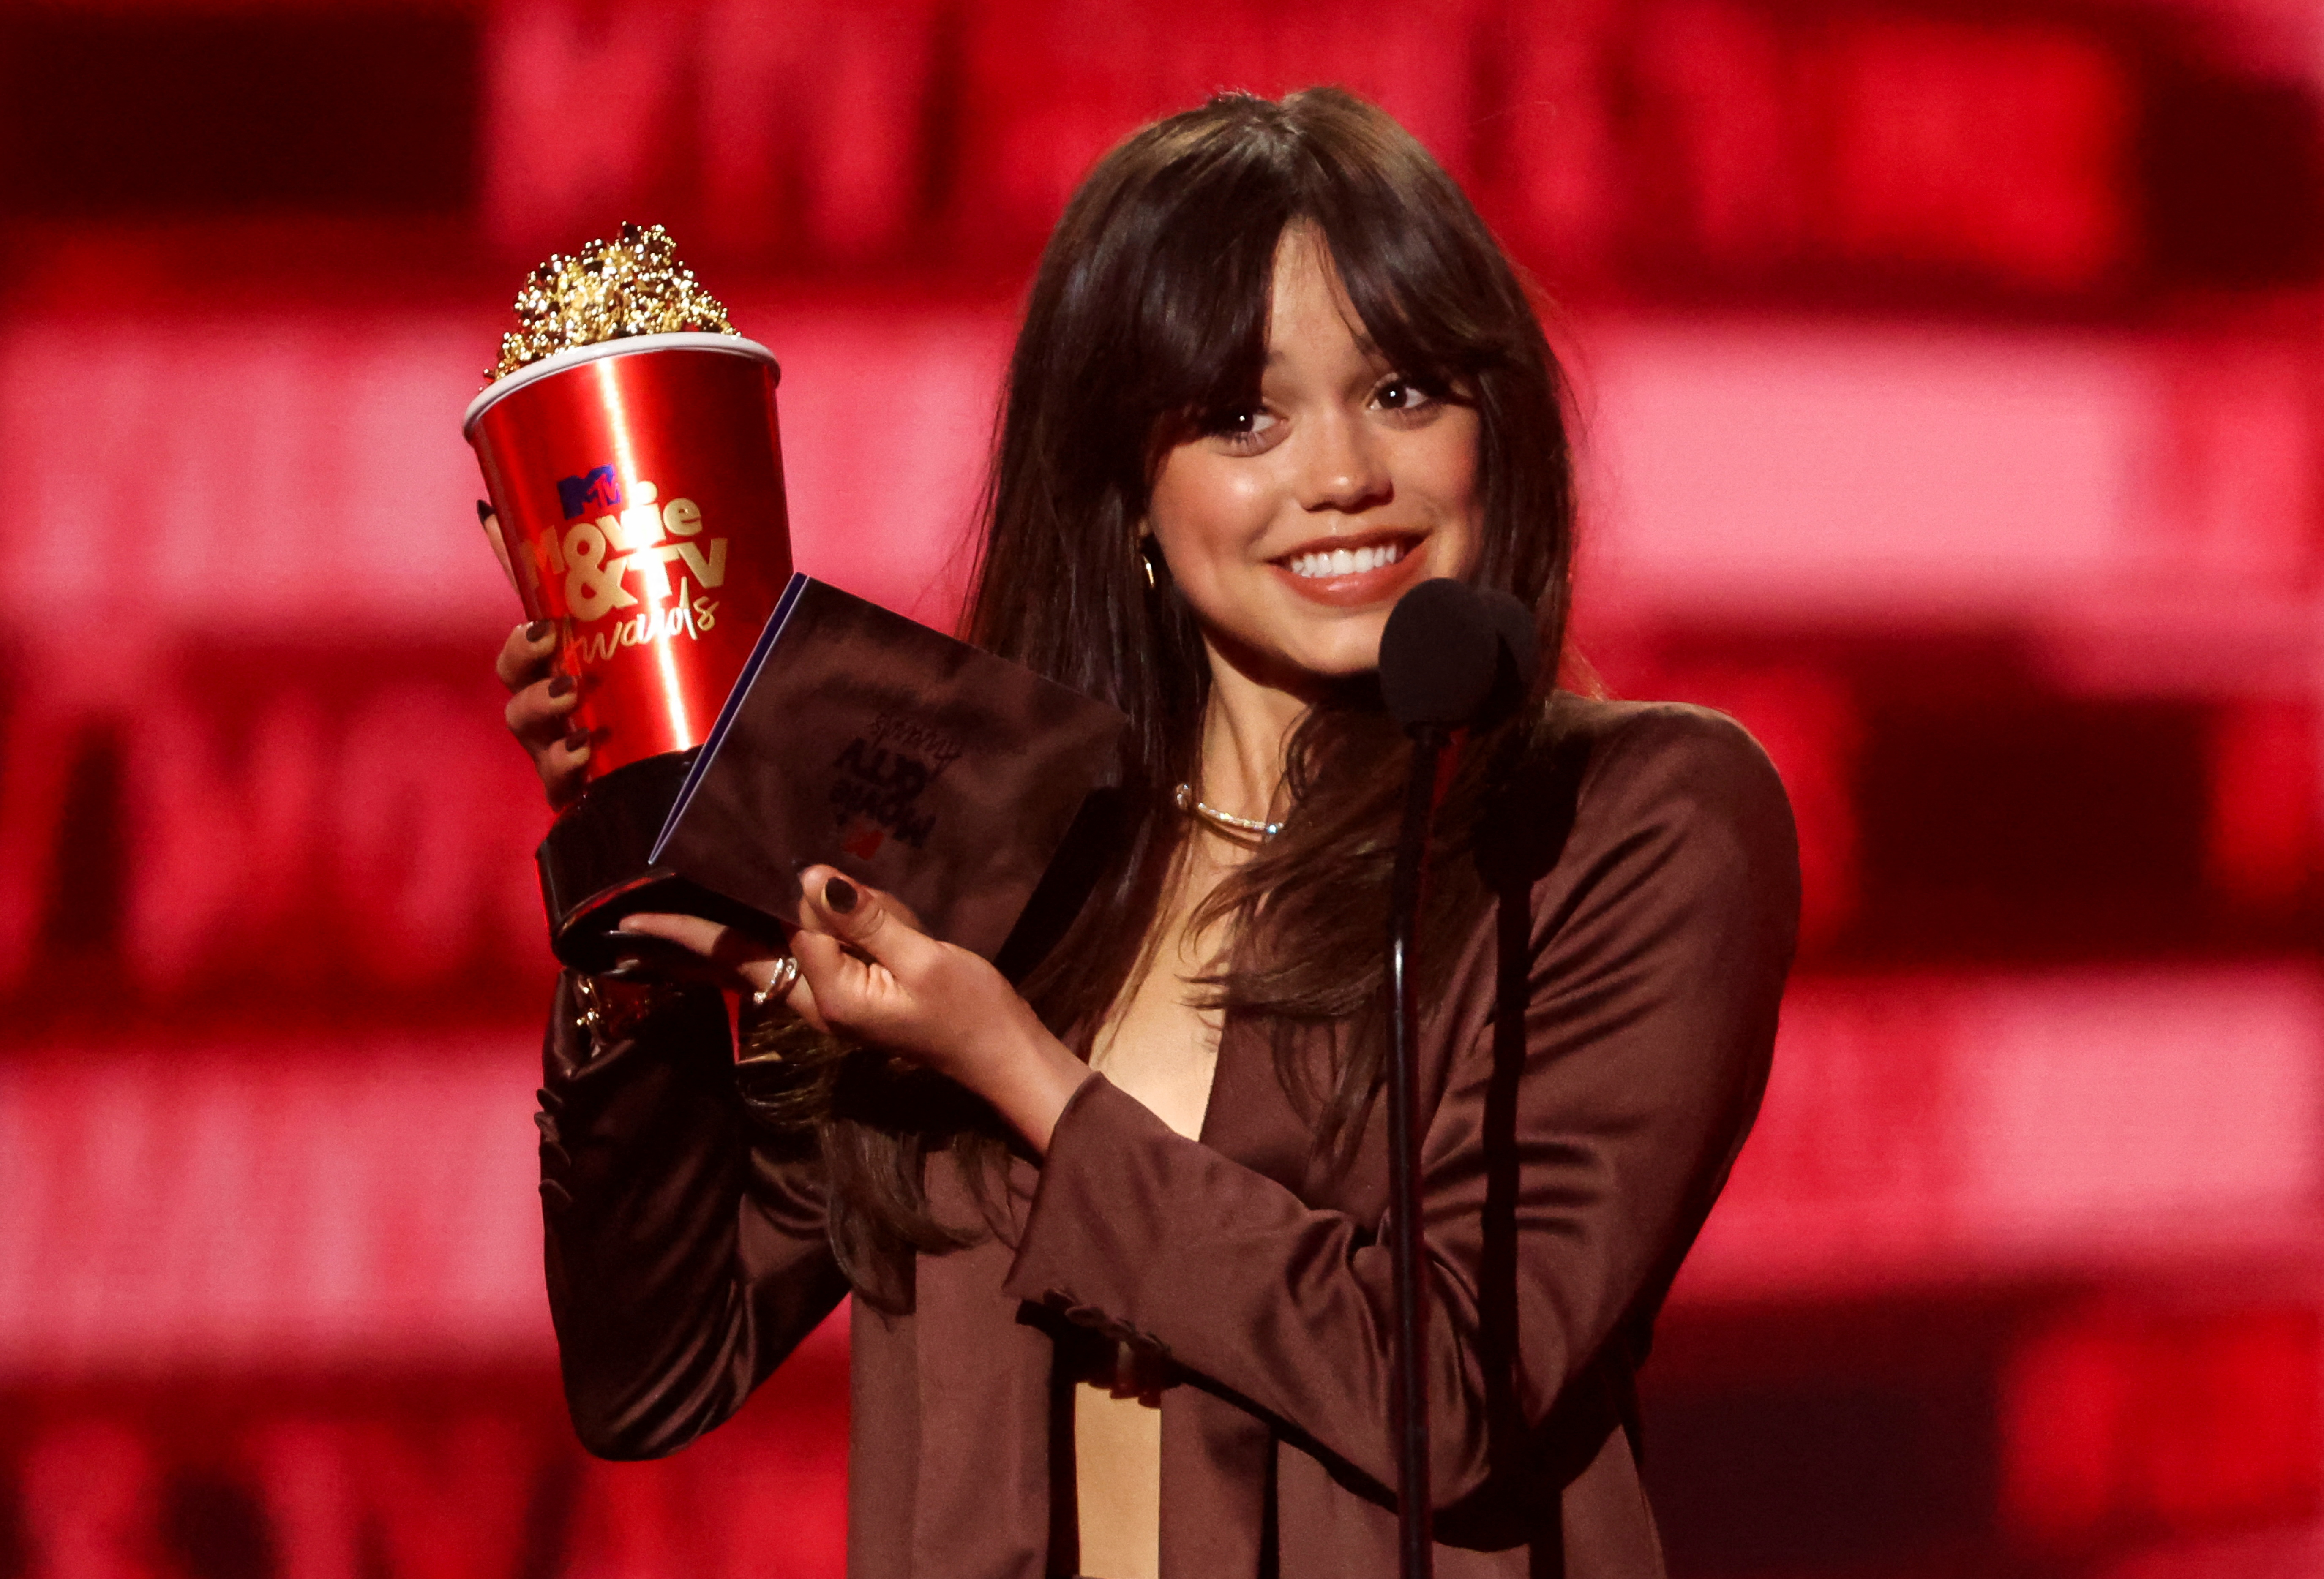 La actriz fue galardonada con un MTV Movie Award a "Mejor actuación asustada" por su colaboración en Scream 5. (Foto: REUTERS/Mario Anzuoni)